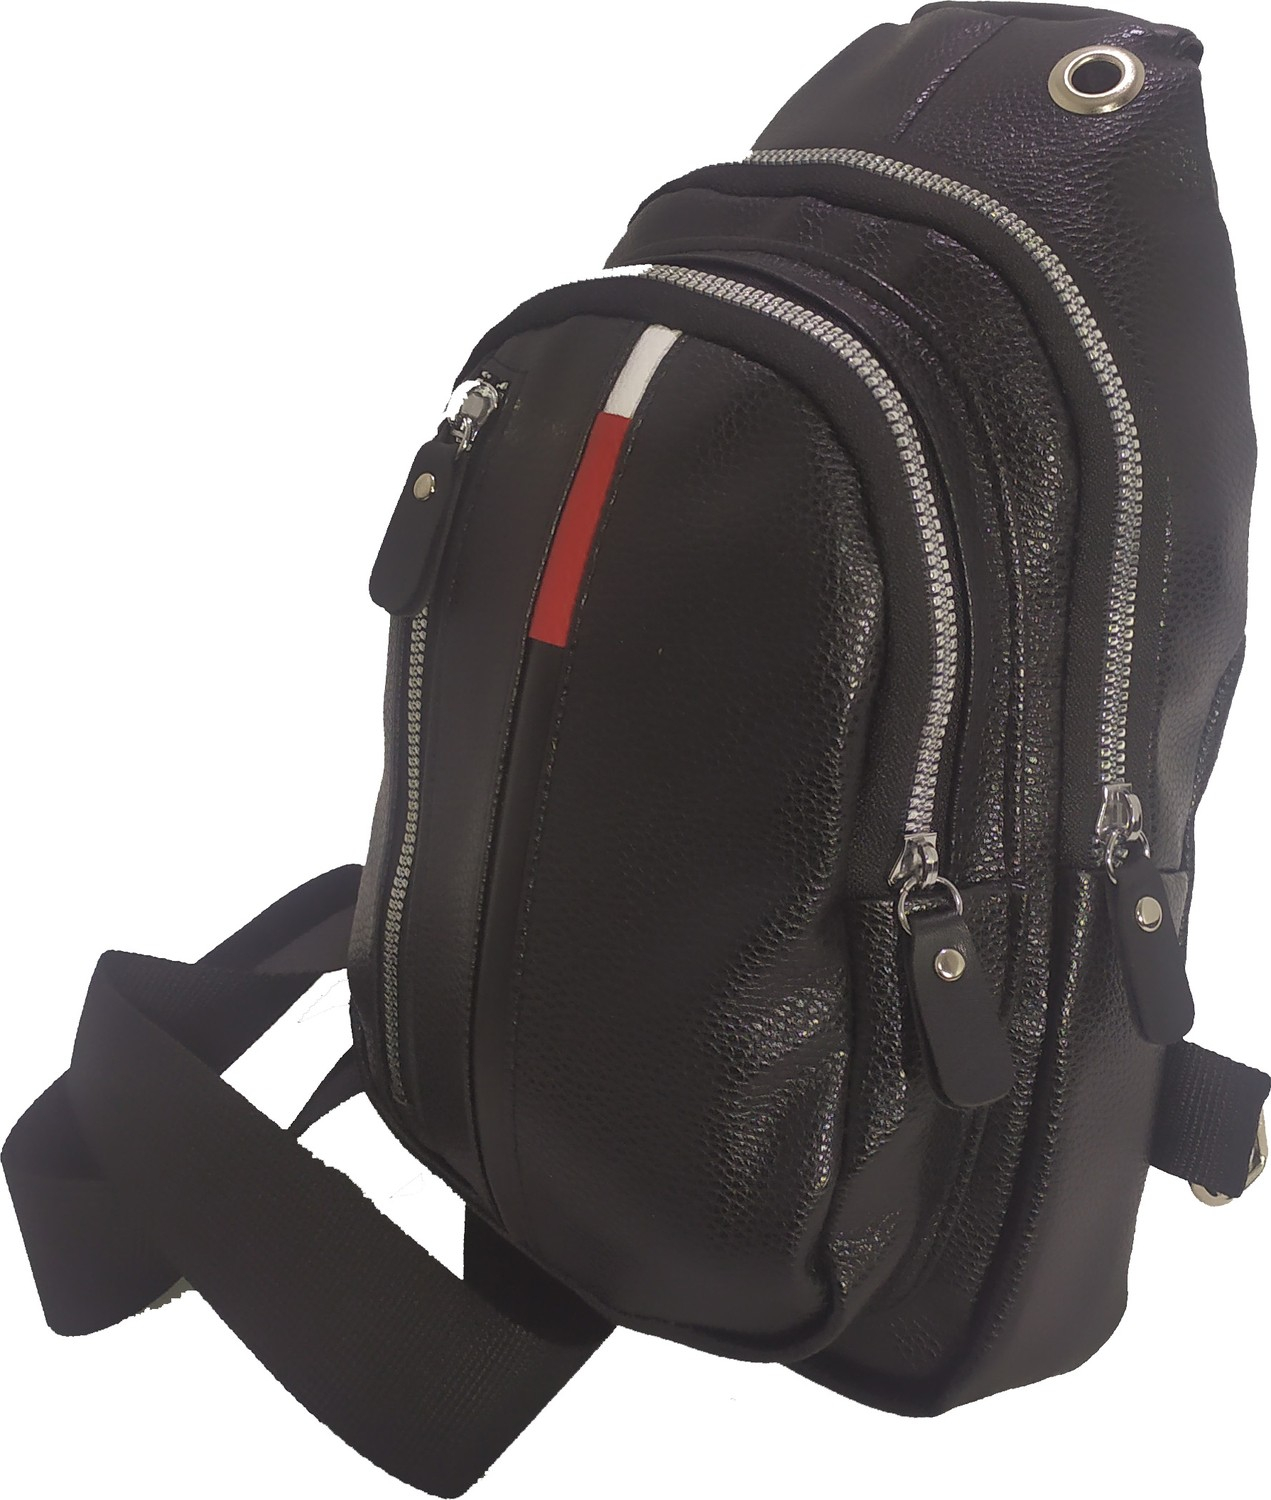 Новая сумка-рюкзак Polo Body Bag Crossbody.